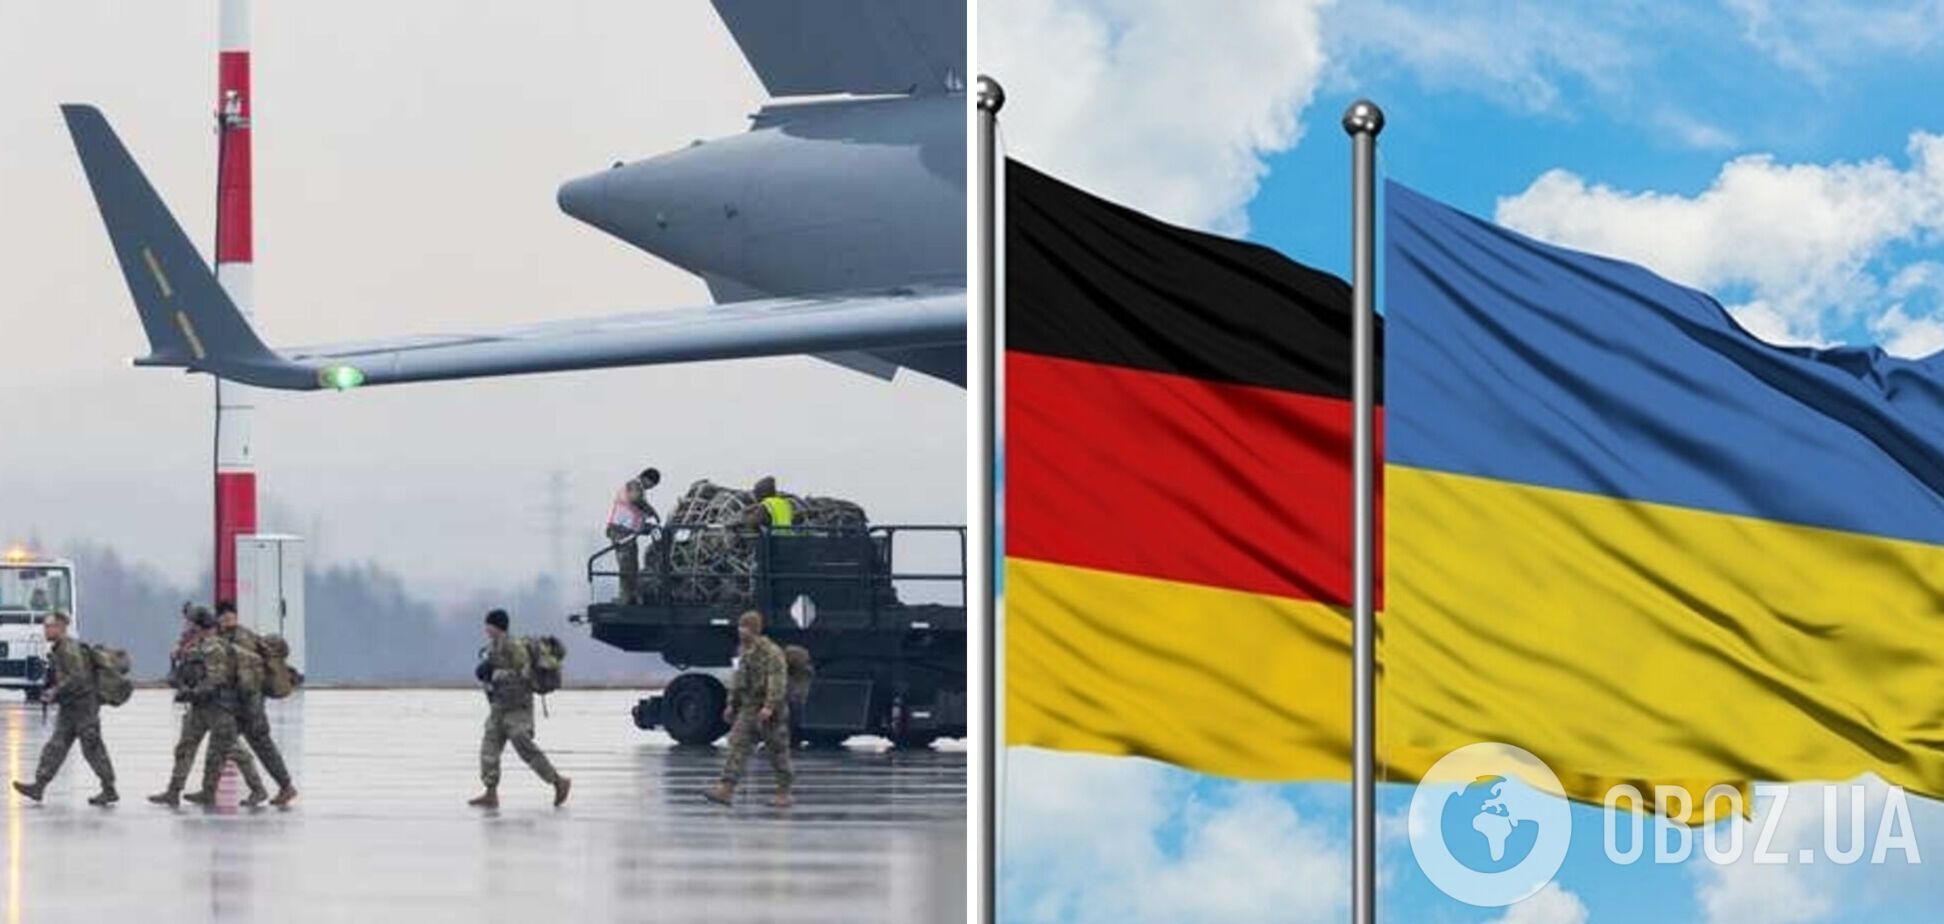 'Можем предложить': в Германии заявили, что могут предоставить аэродромы для обучения украинских пилотов на F-16